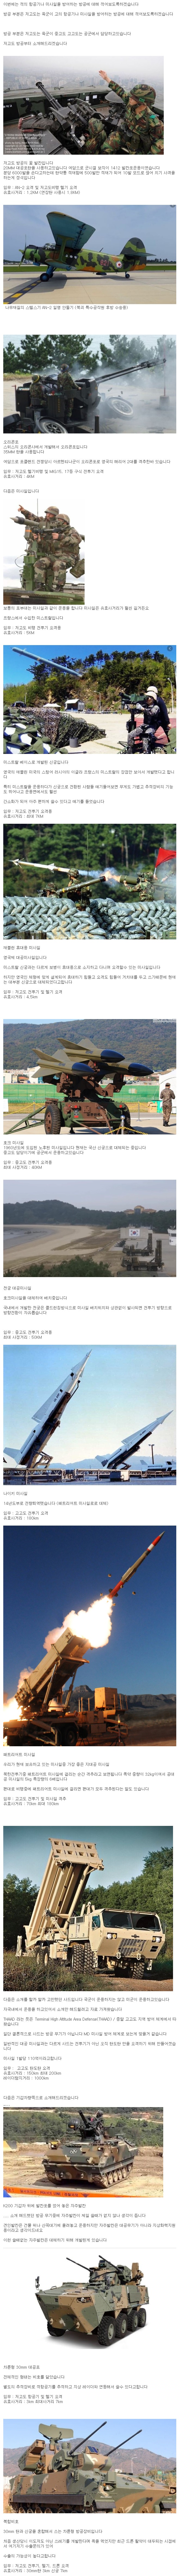 한국의 하늘을 책임지는 방공 무기